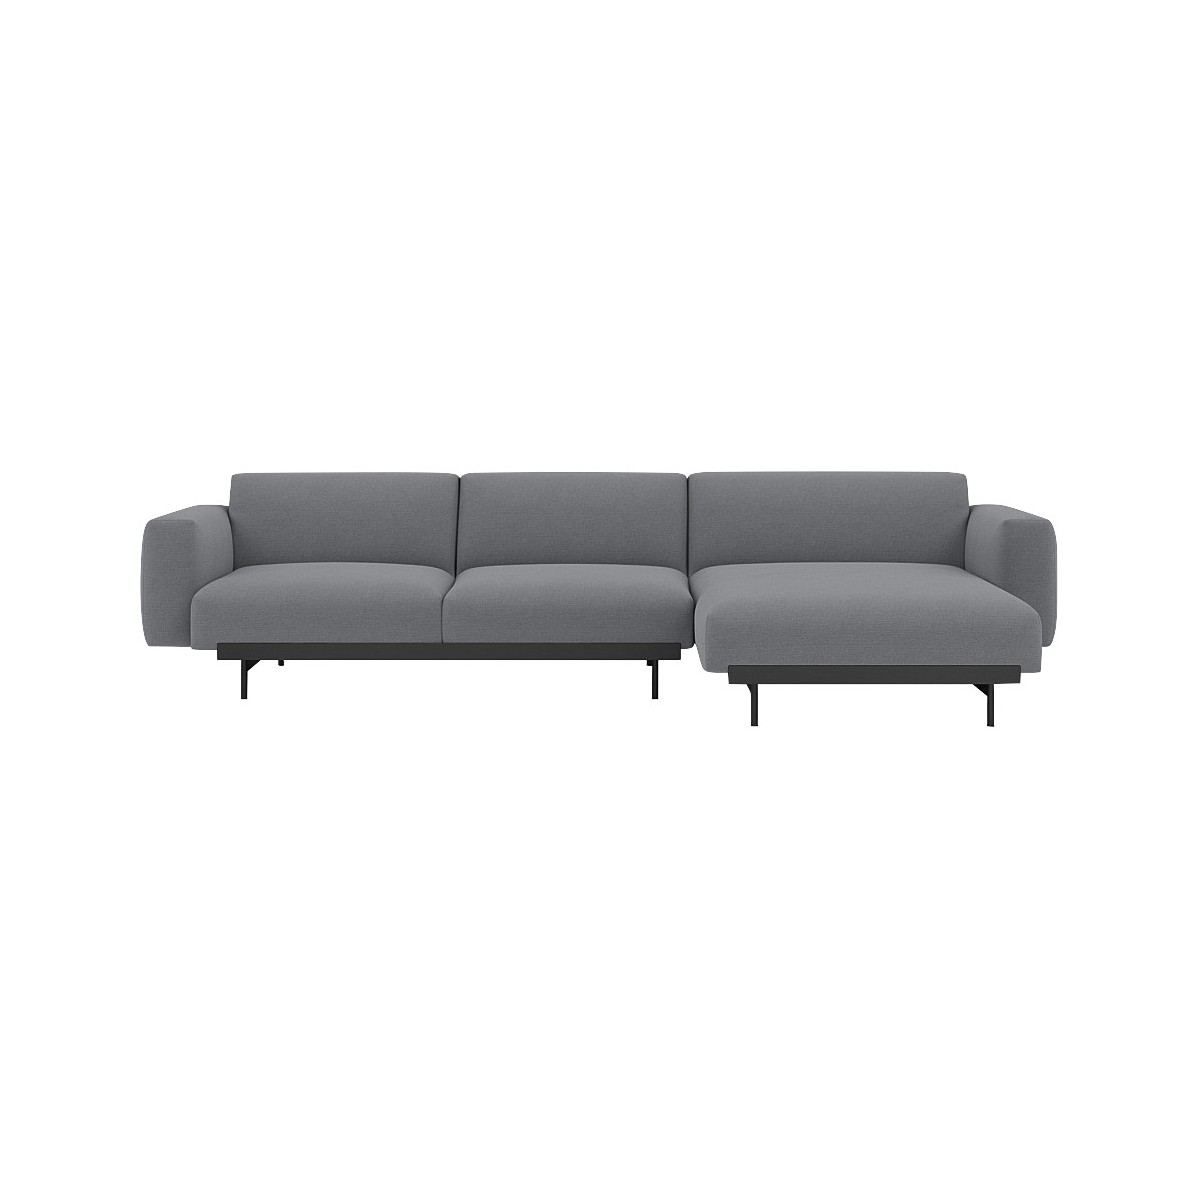 Ocean 80 / black – In Situ 3-seater sofa / configuration 6 – 297 x 169 cm